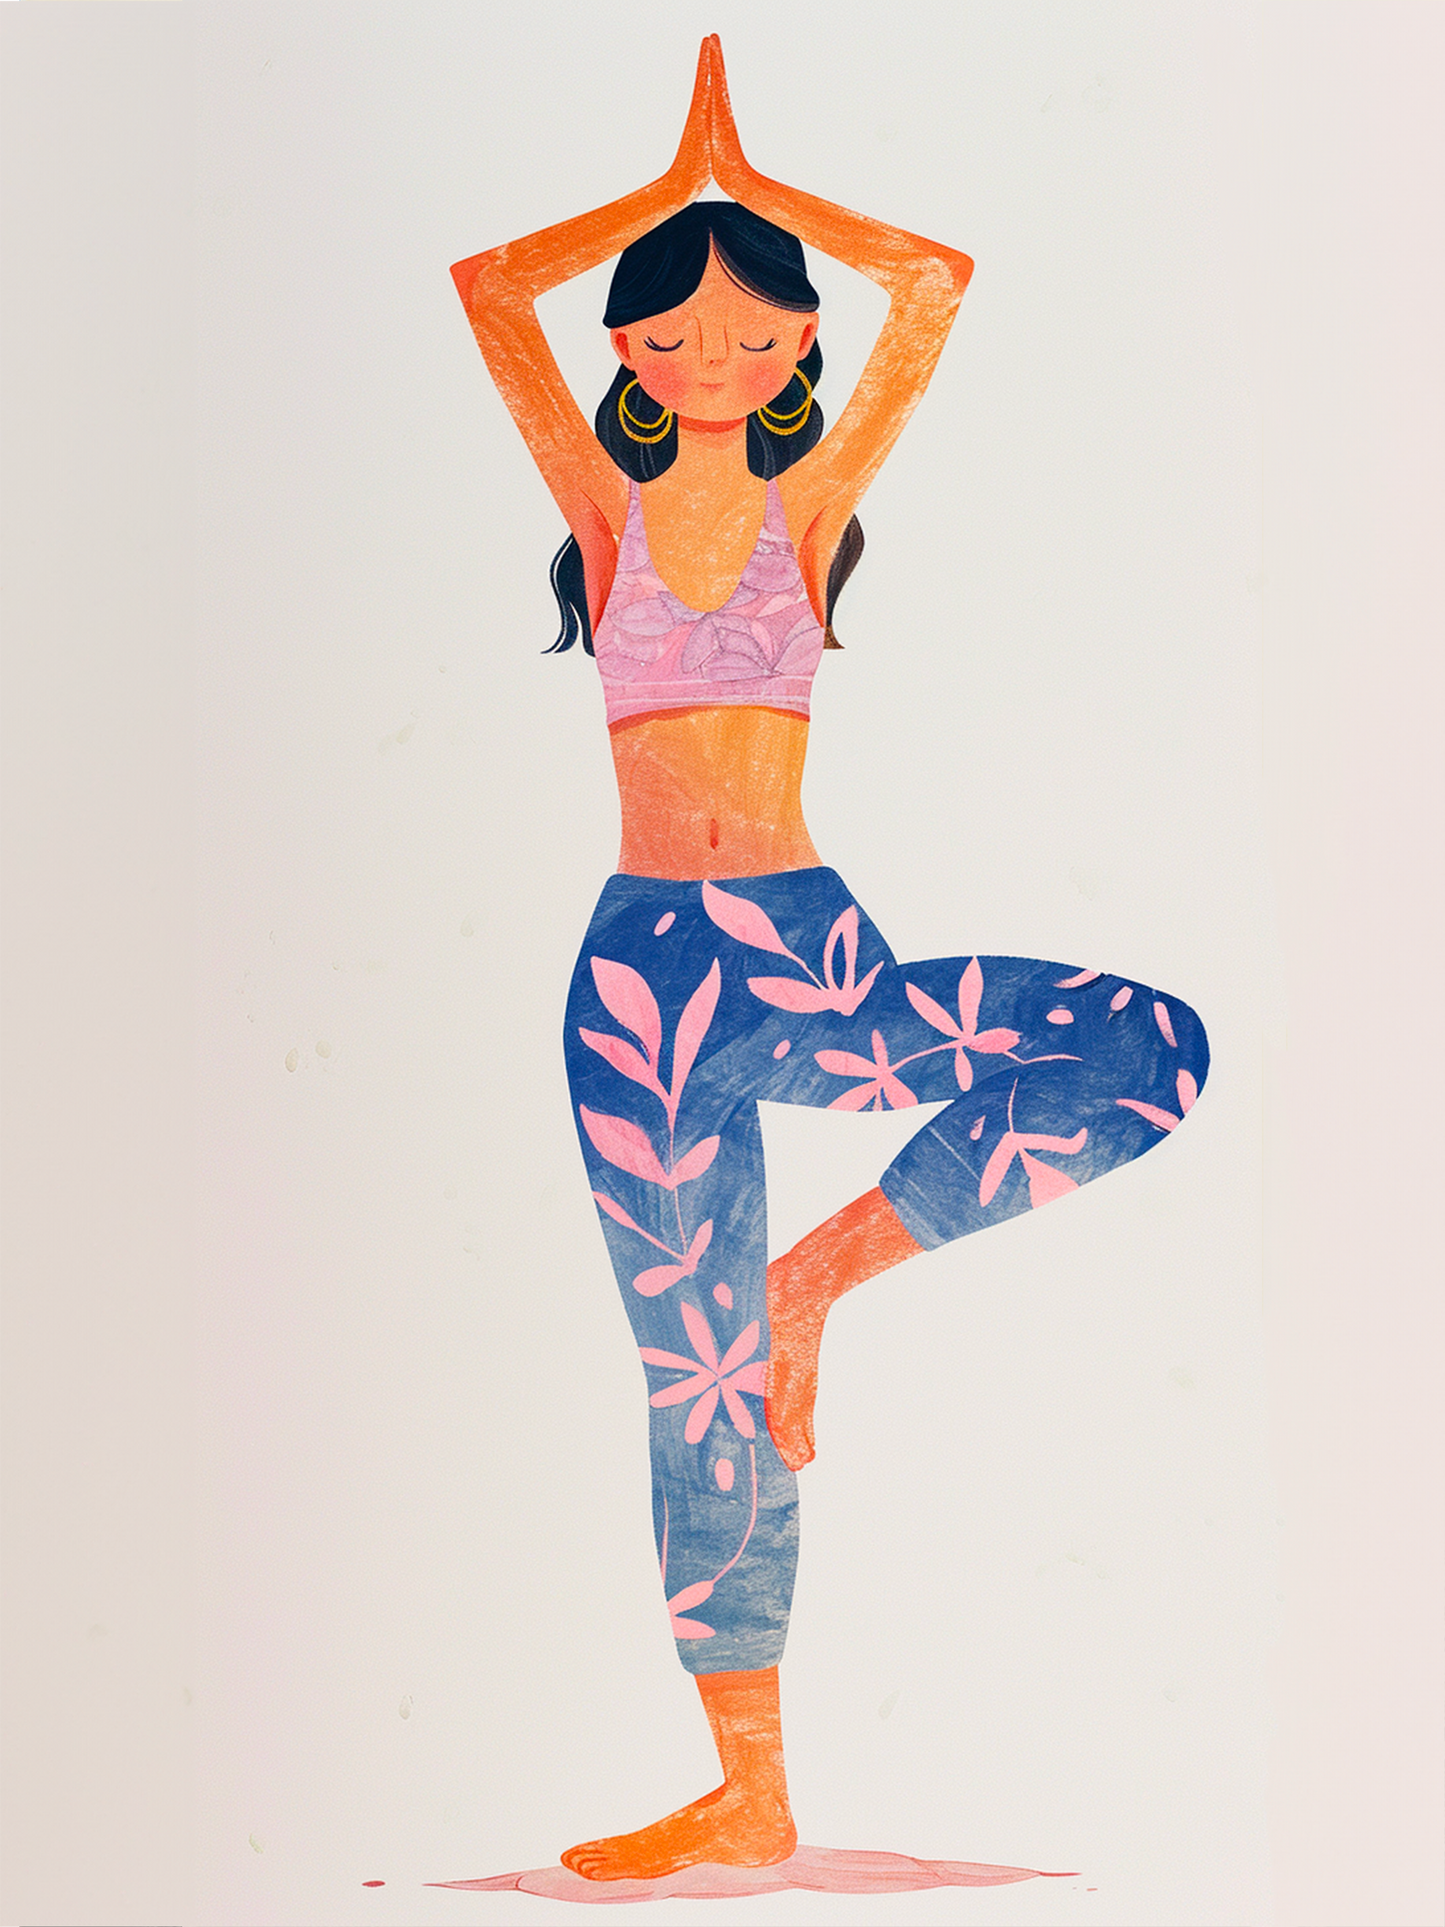 Illustration lumineuse d'une posture de yoga en équilibre, teintes pastel douces.